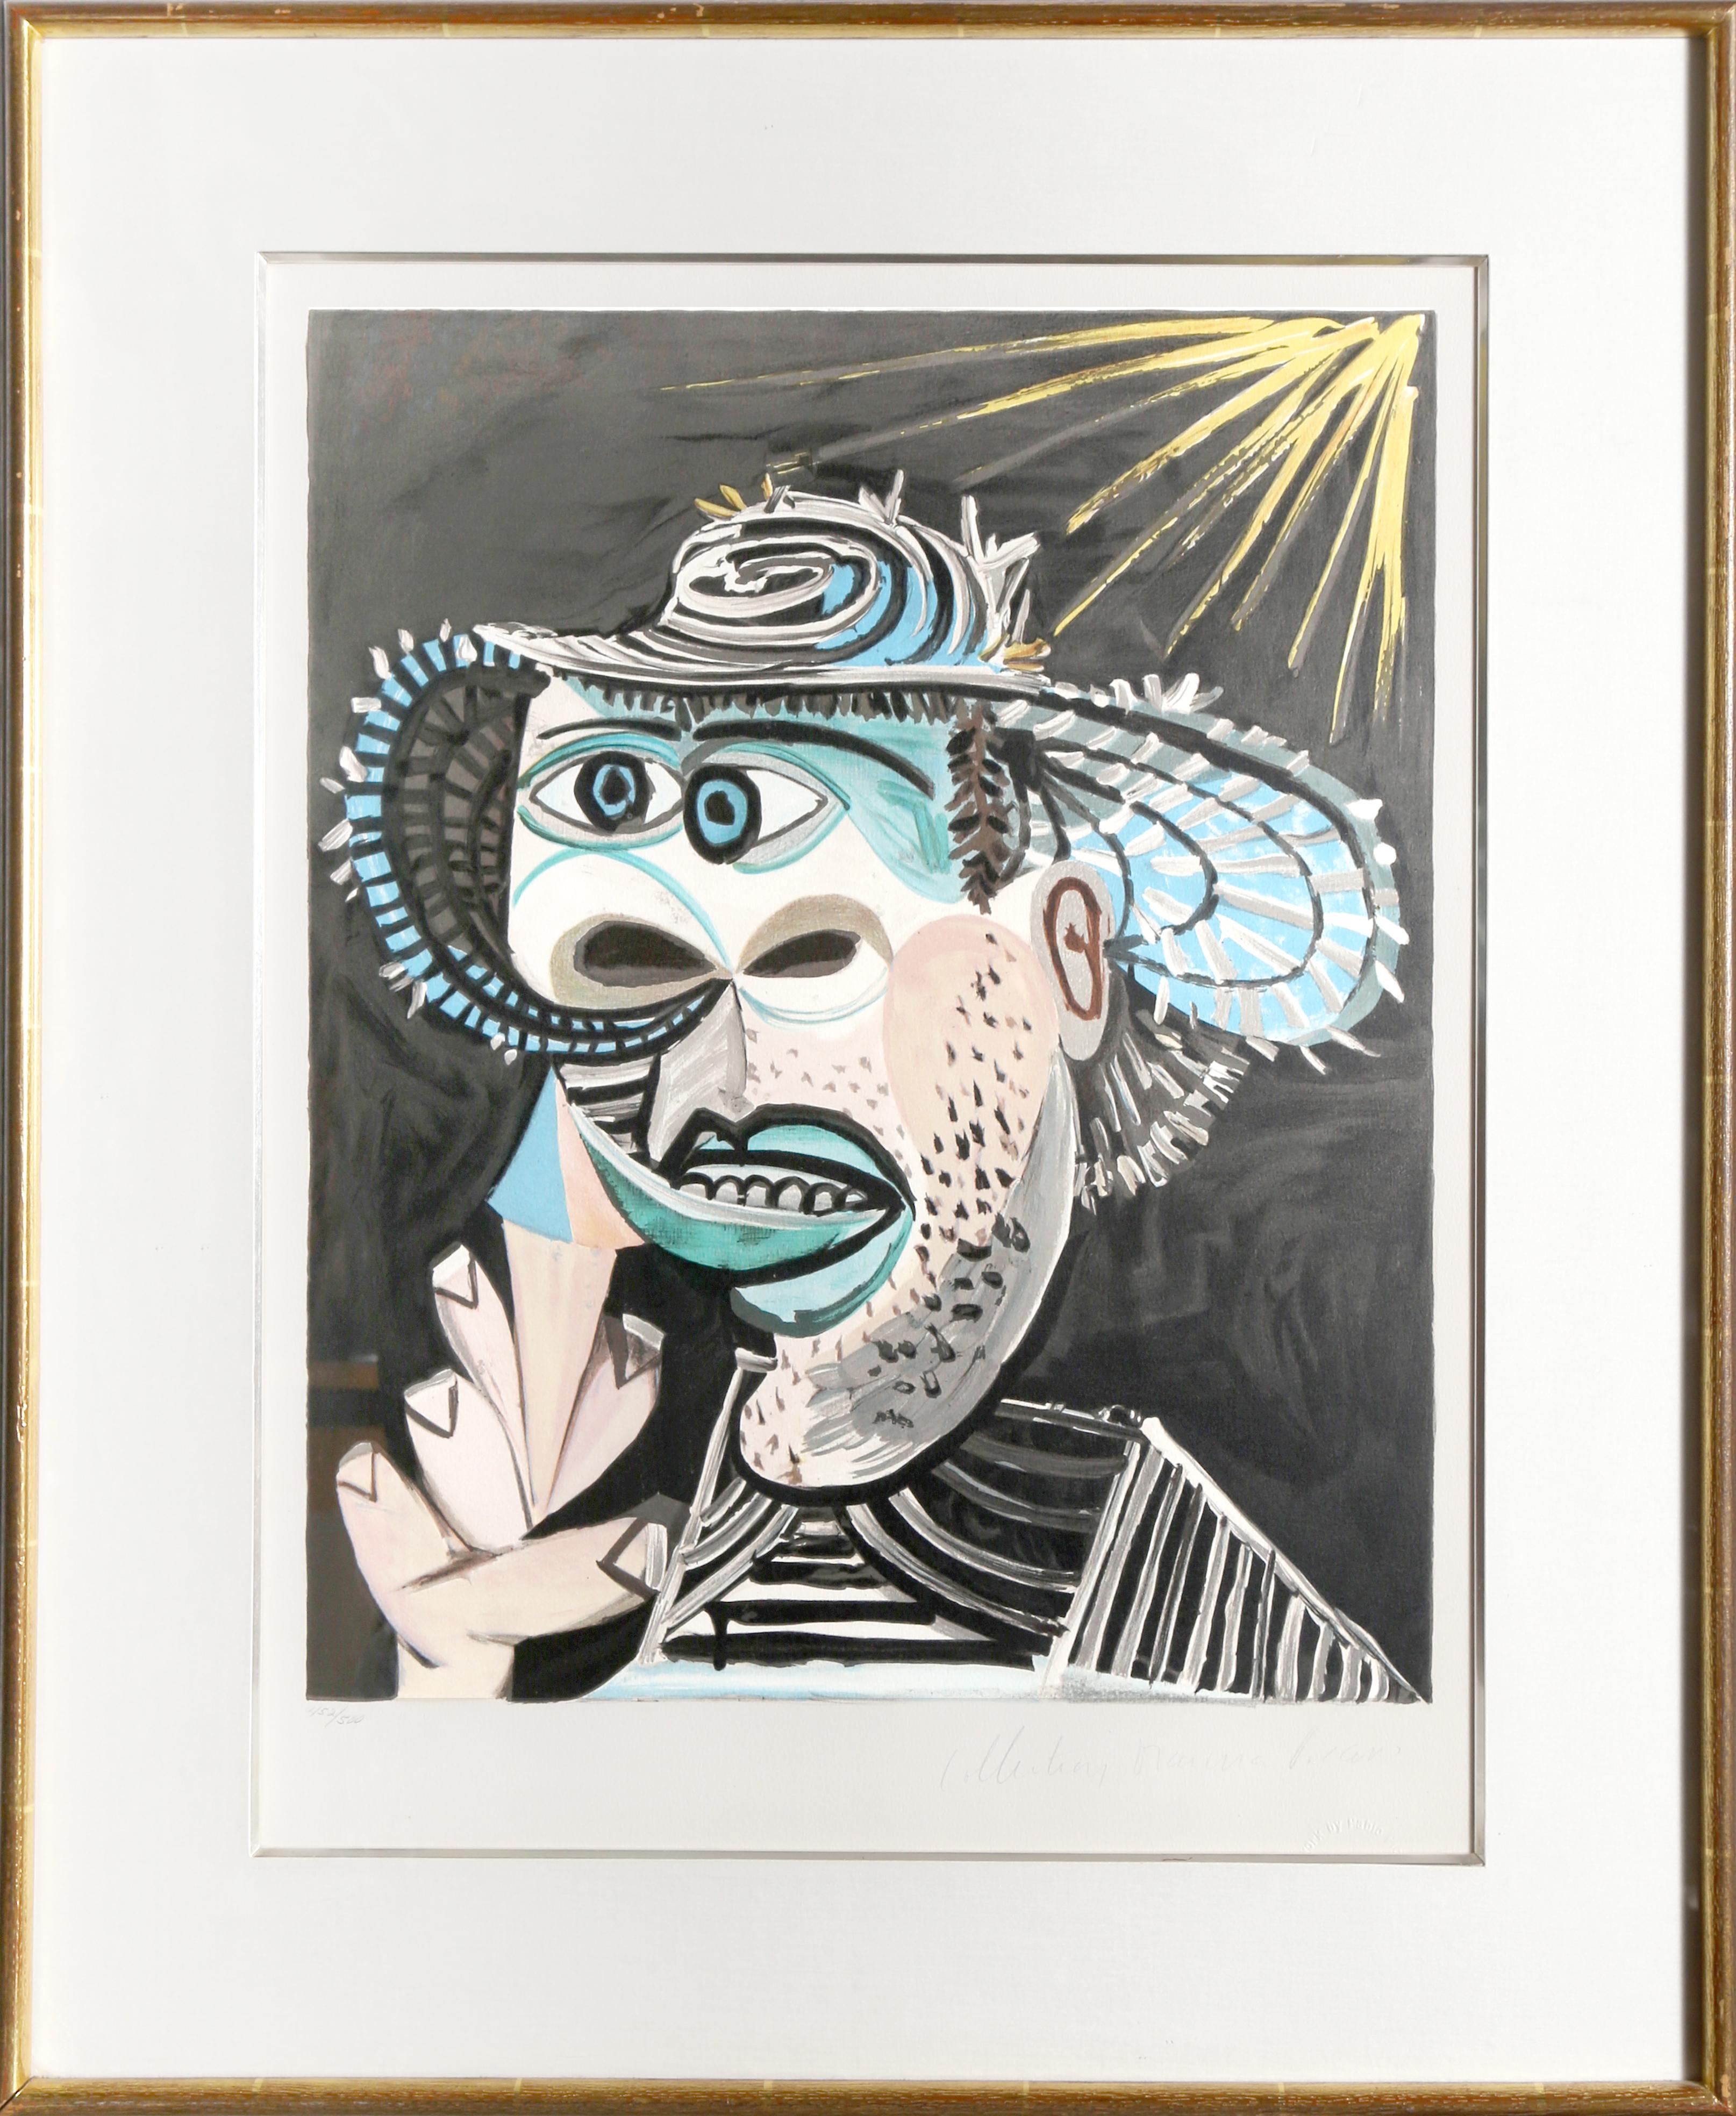 Eine Lithographie aus der Nachlasssammlung Marina Picasso nach dem Gemälde "Homme Au Cornet" von Pablo Picasso.  Das Originalgemälde wurde 1938 fertiggestellt. In den 1970er Jahren, nach Picassos Tod, autorisierte Marina Picasso, seine Enkelin, die